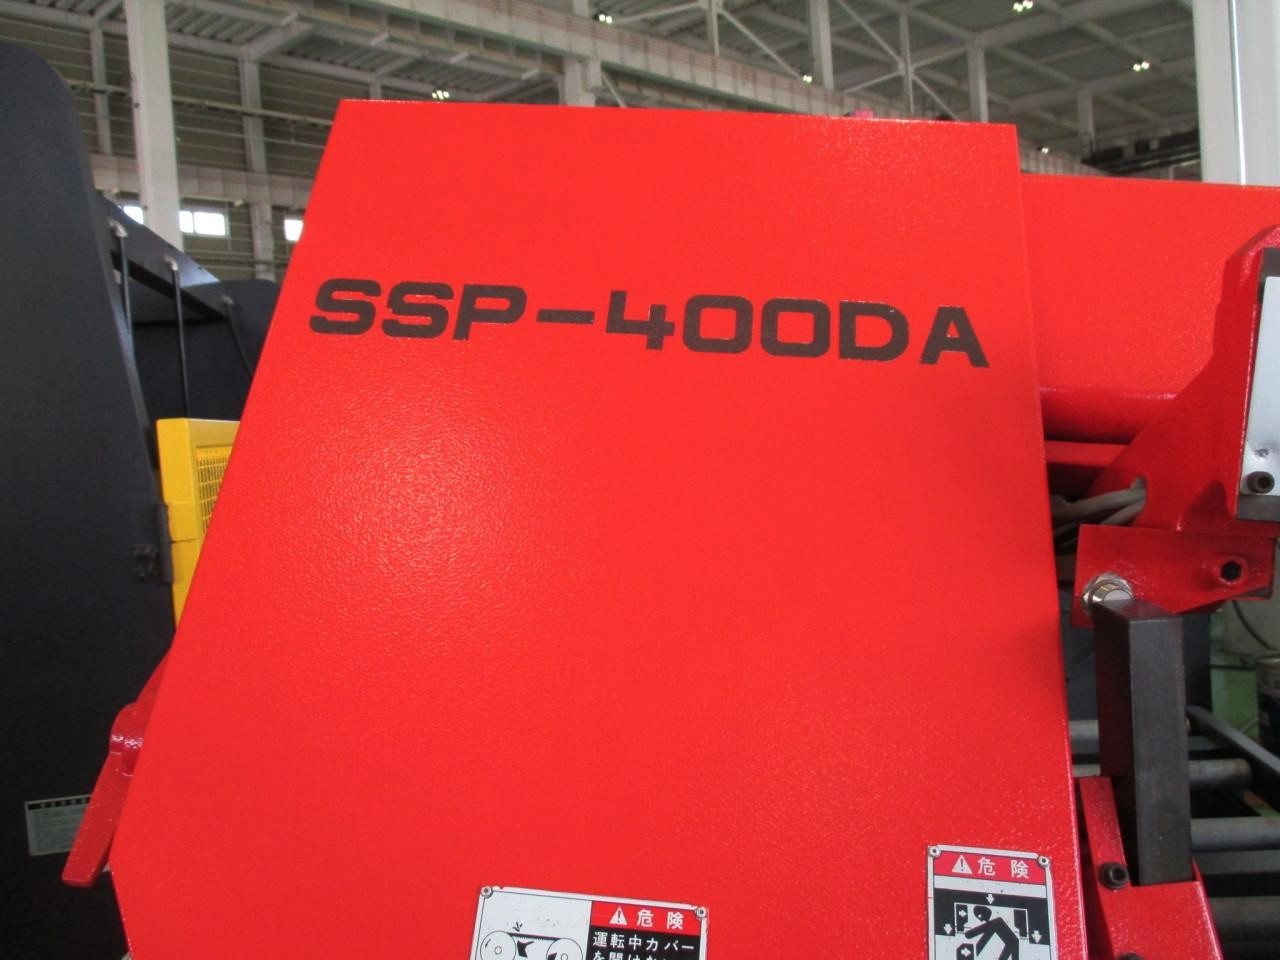 SSP-400DAの型式表示ステッカー